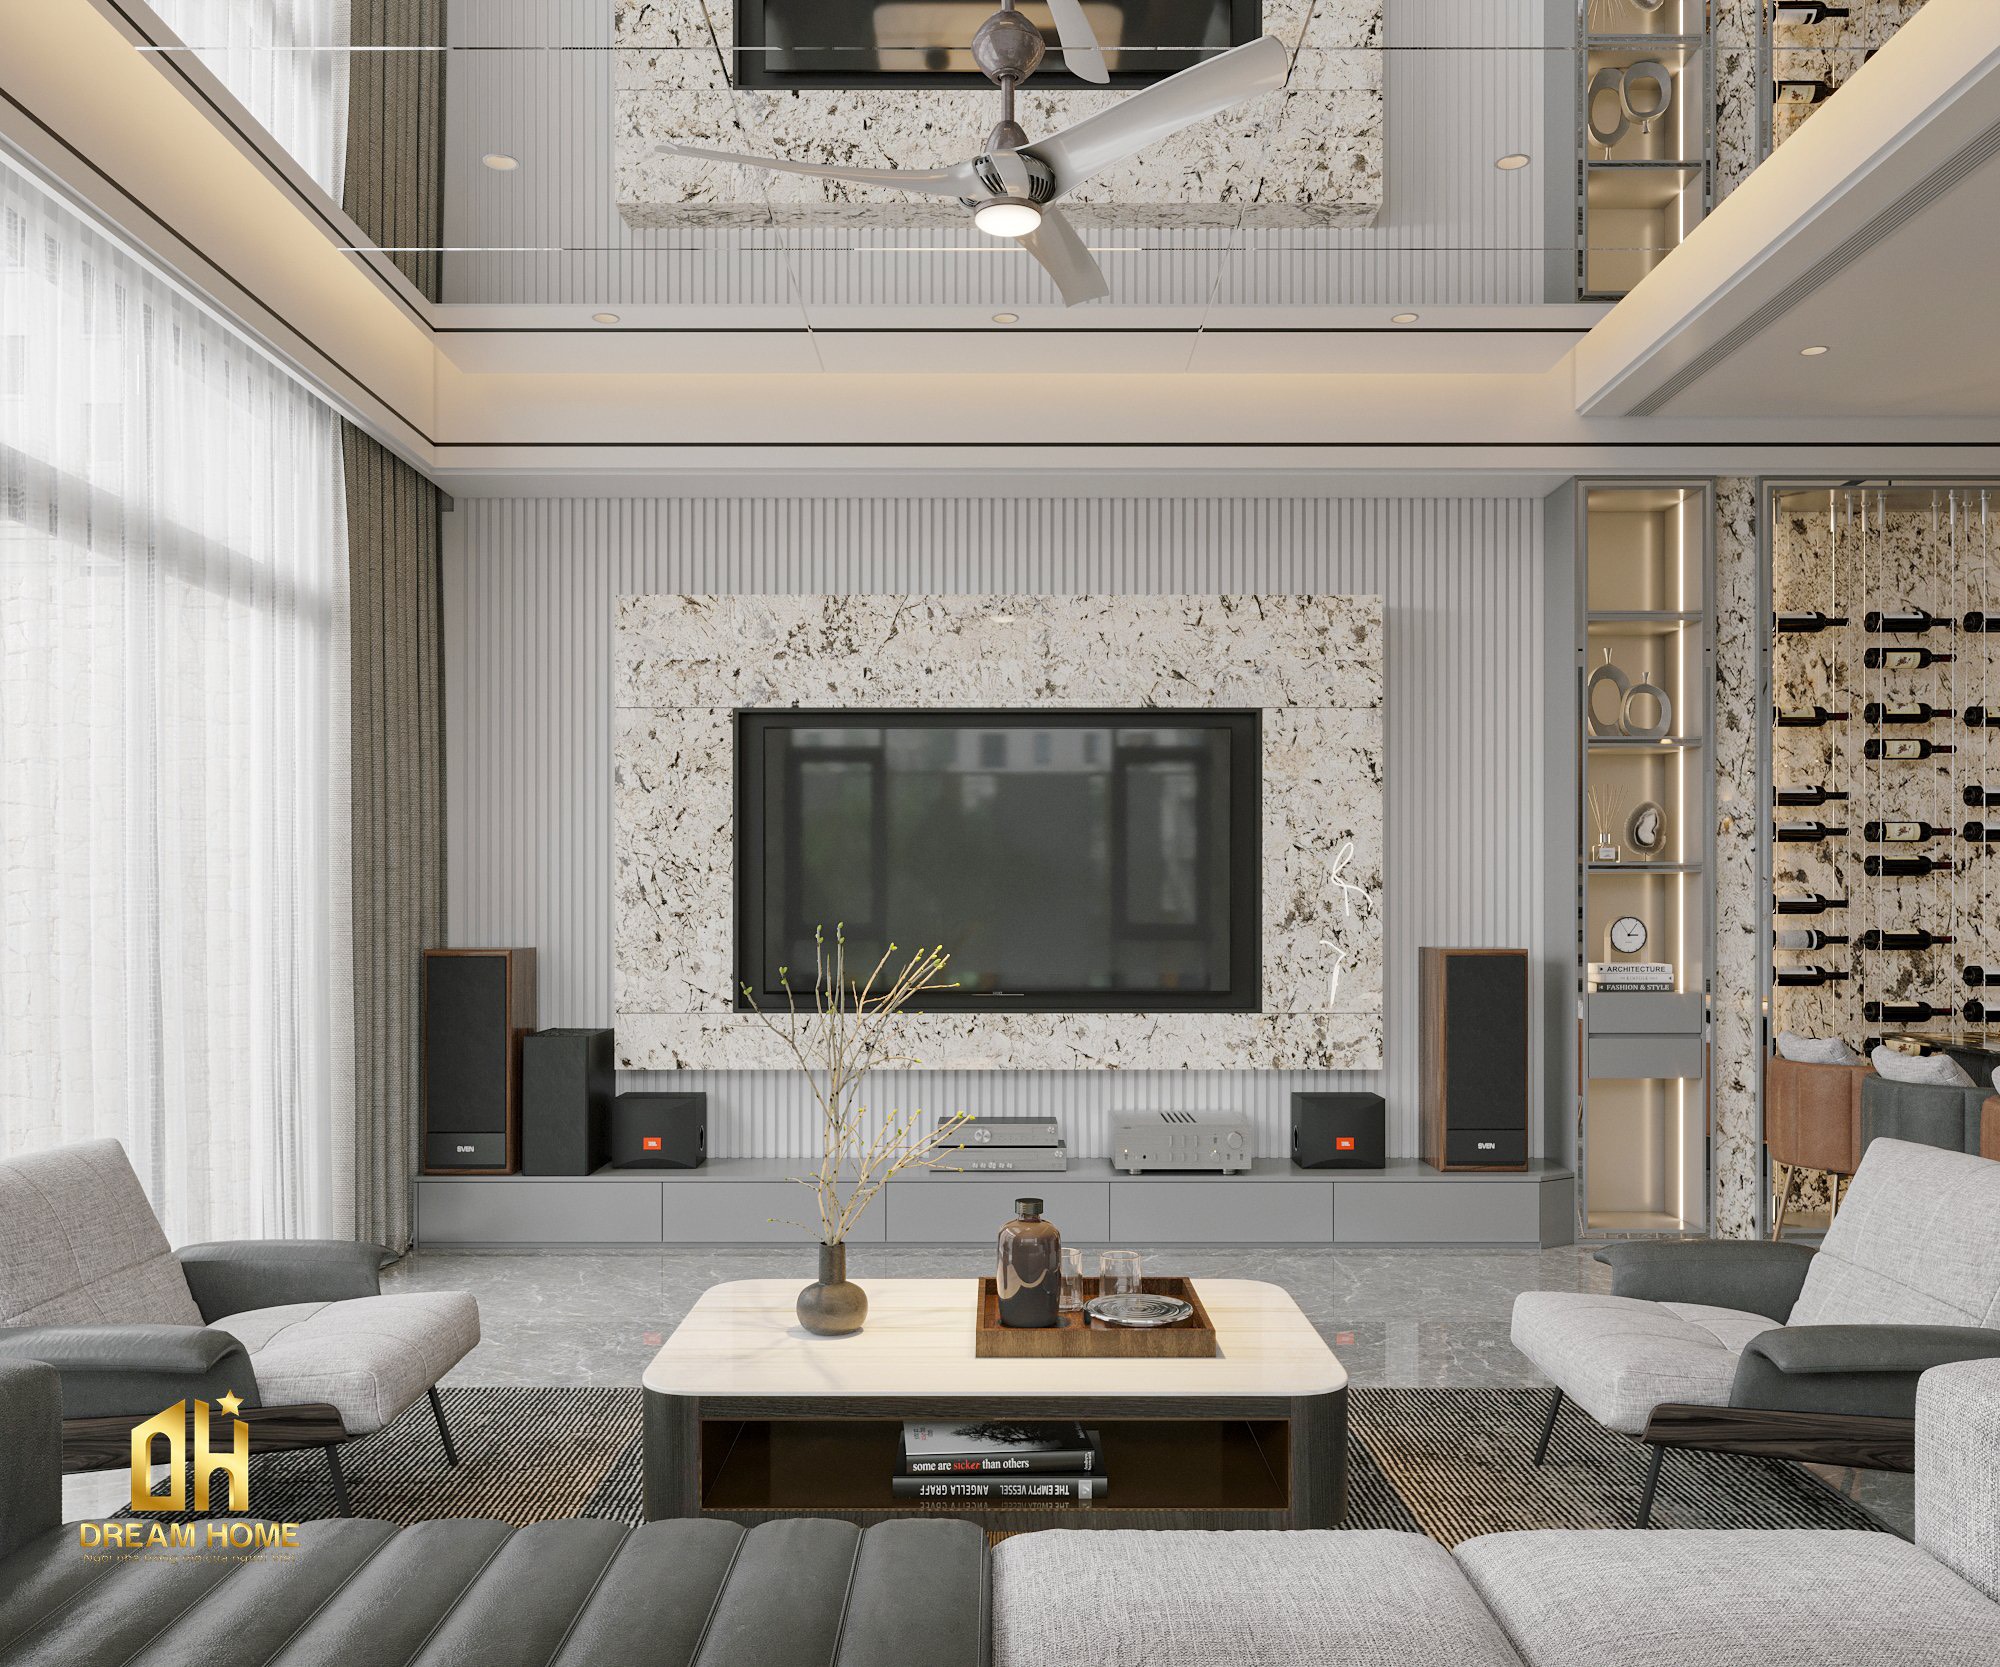 Thiết kế nội thất với tone màu sáng làm chủ đạo tạo ra một không gian mở rộng và sáng sủa